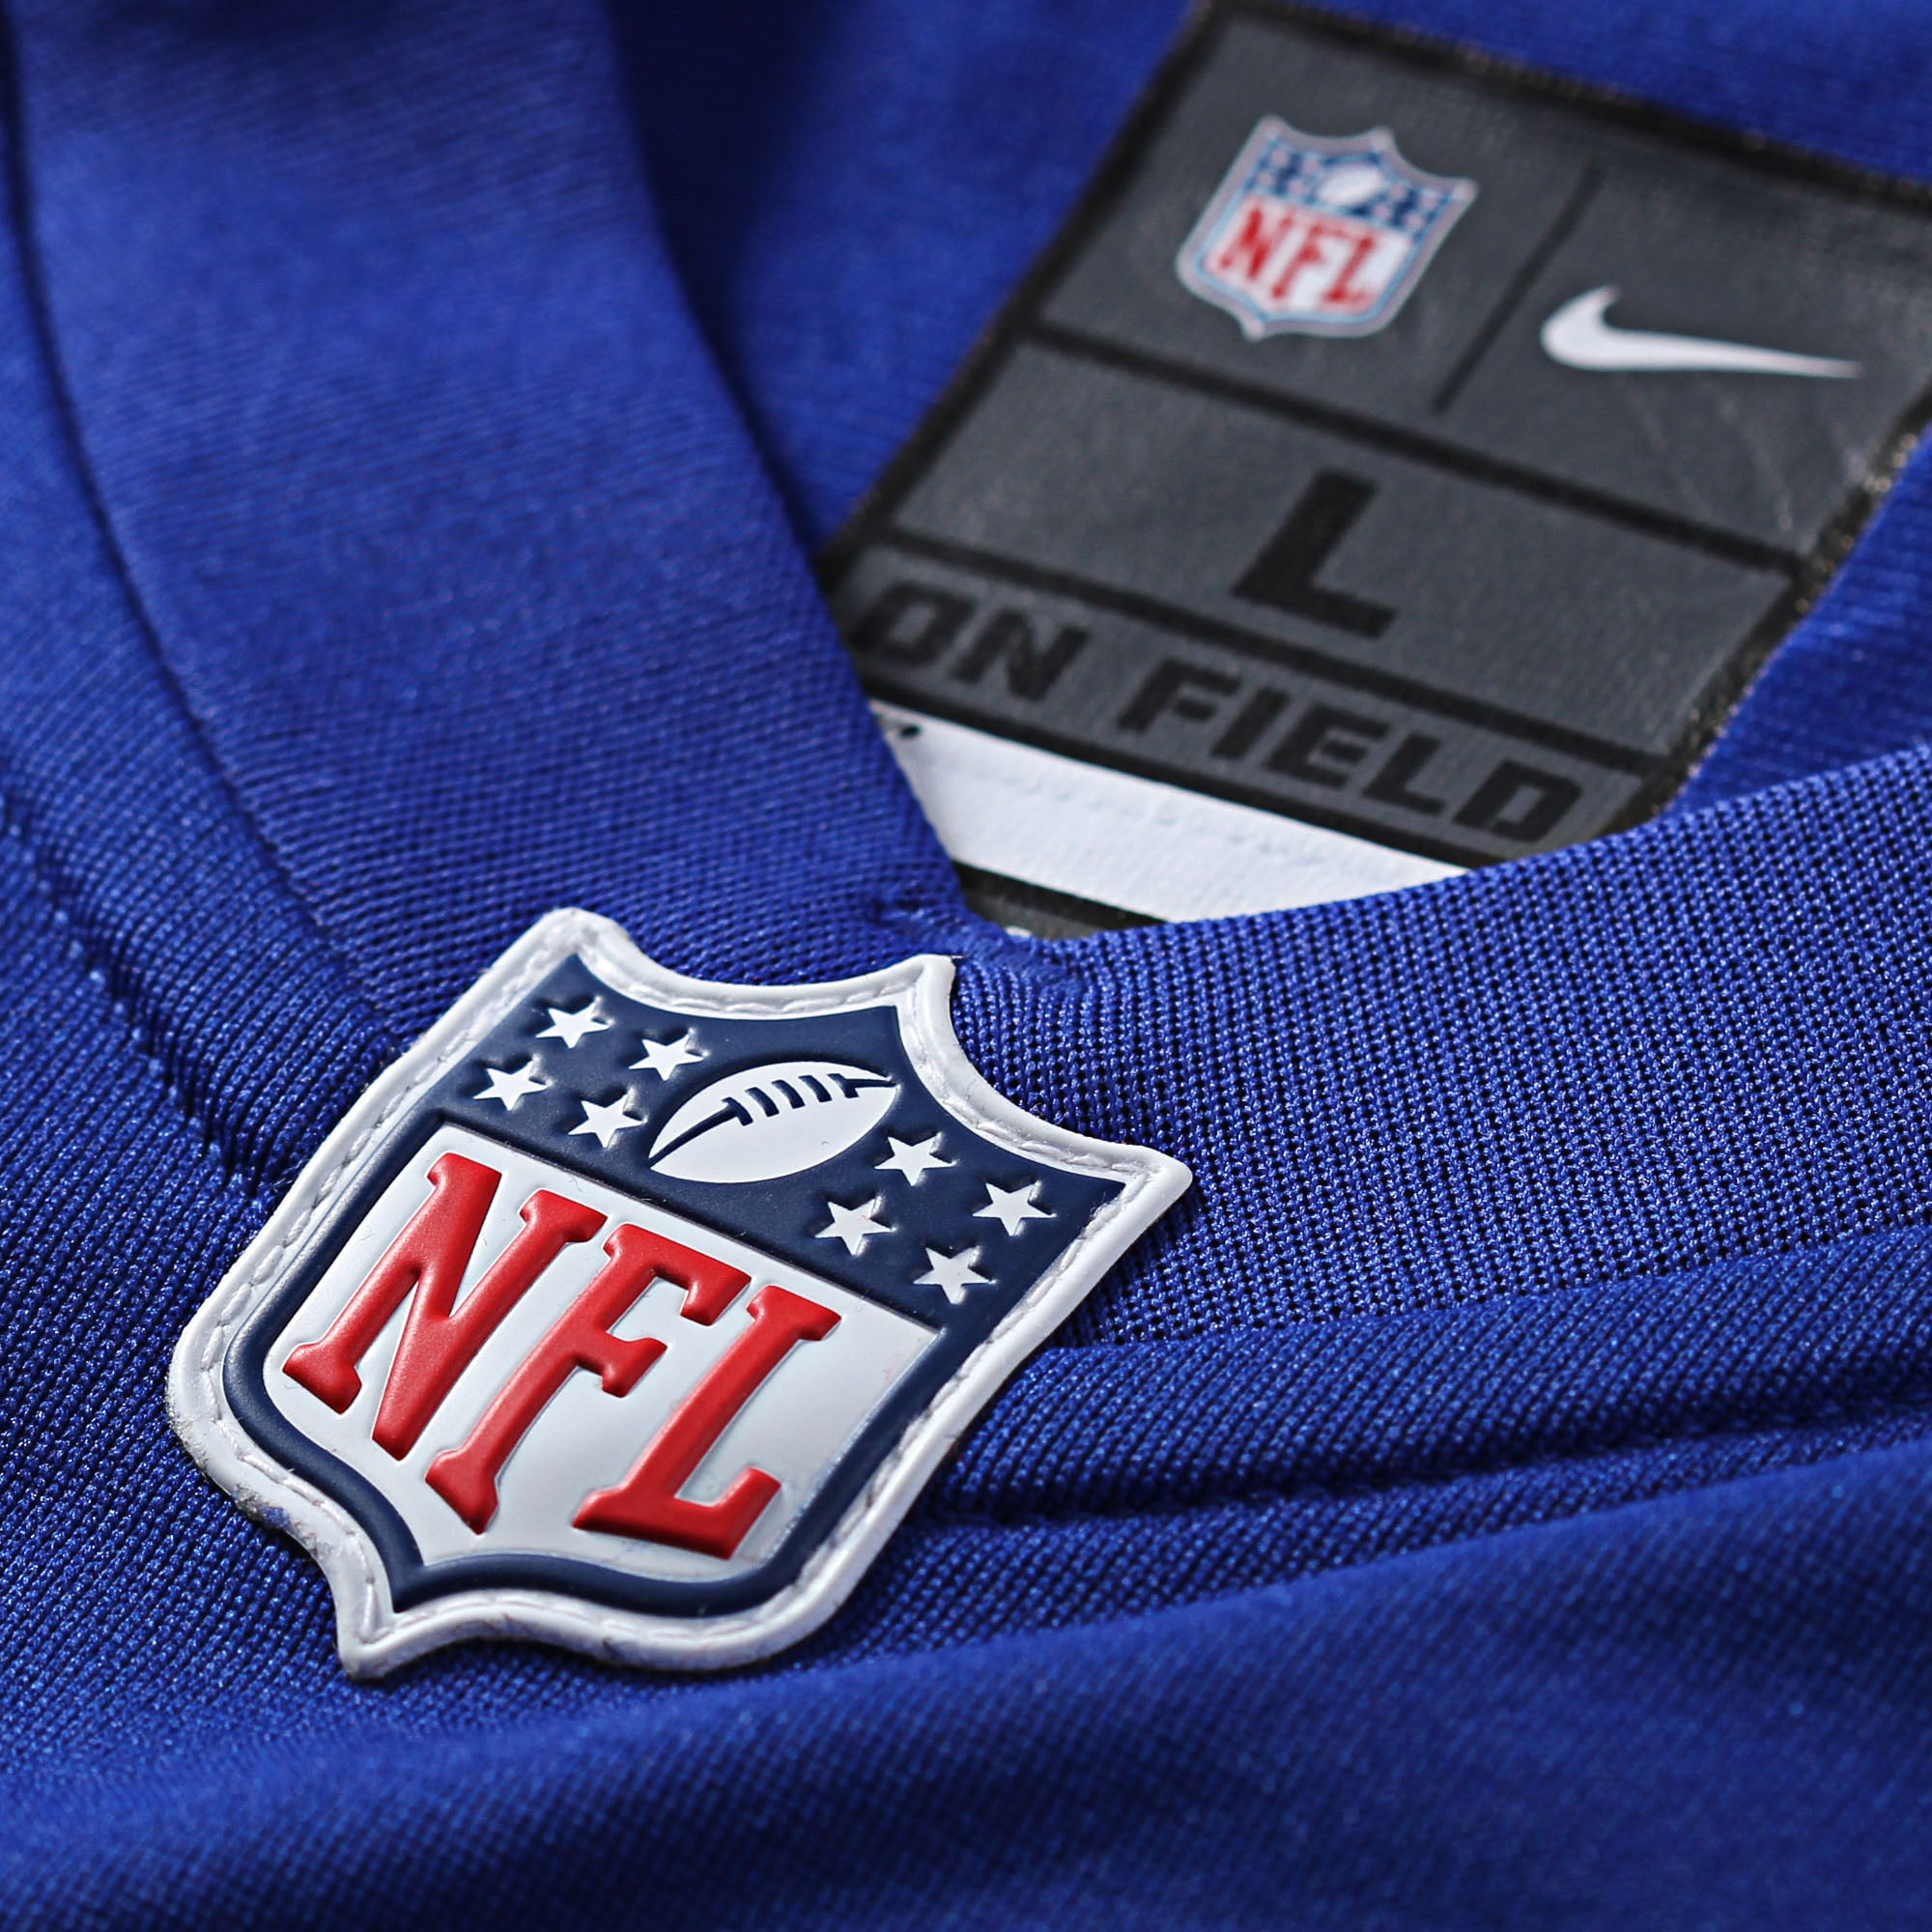 Mens American Football Uniform Shirt Game Player Jersey Josh Allen Buffalo Bills #17 Embroidered Football Jersey 